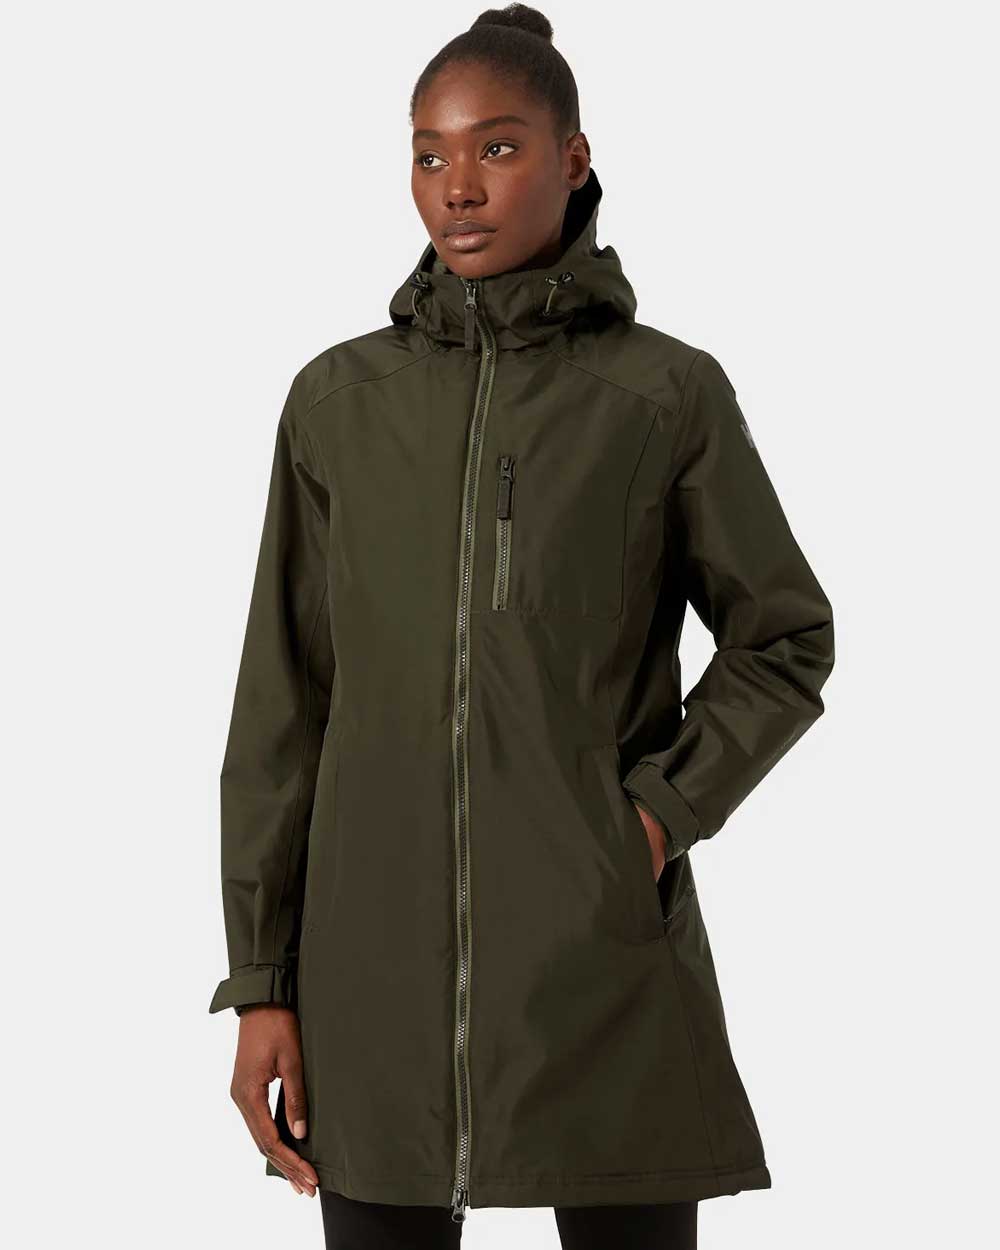 Women's Waterproof Jackets